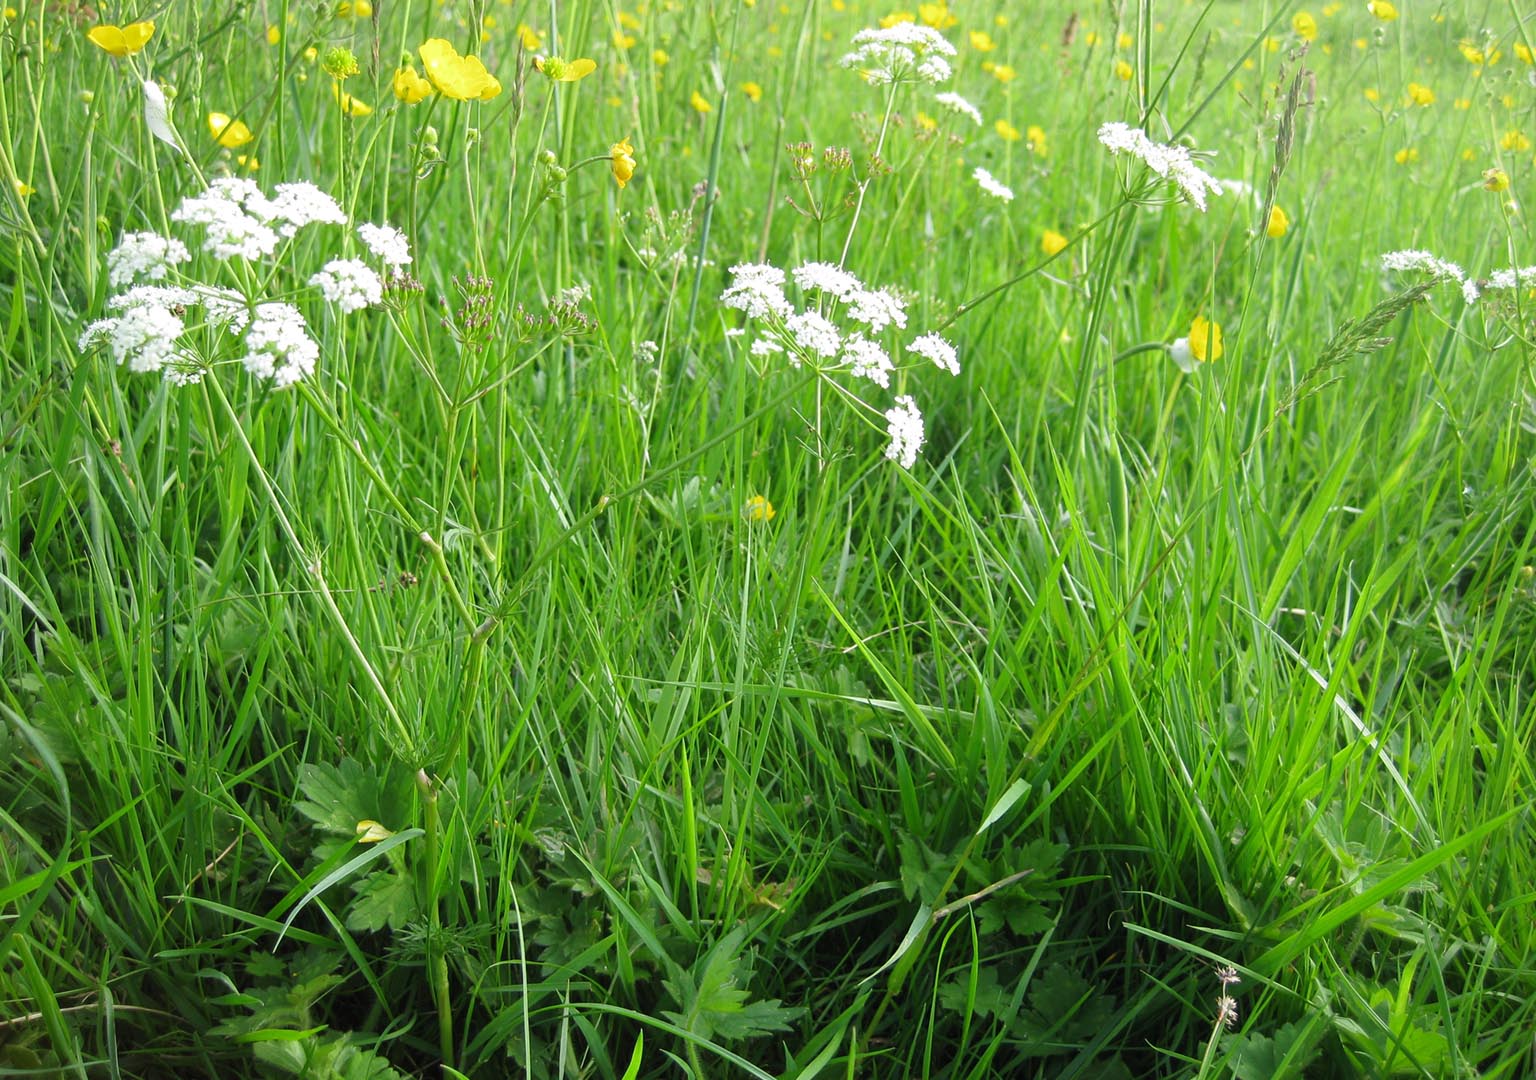 Flower-rich grass sward